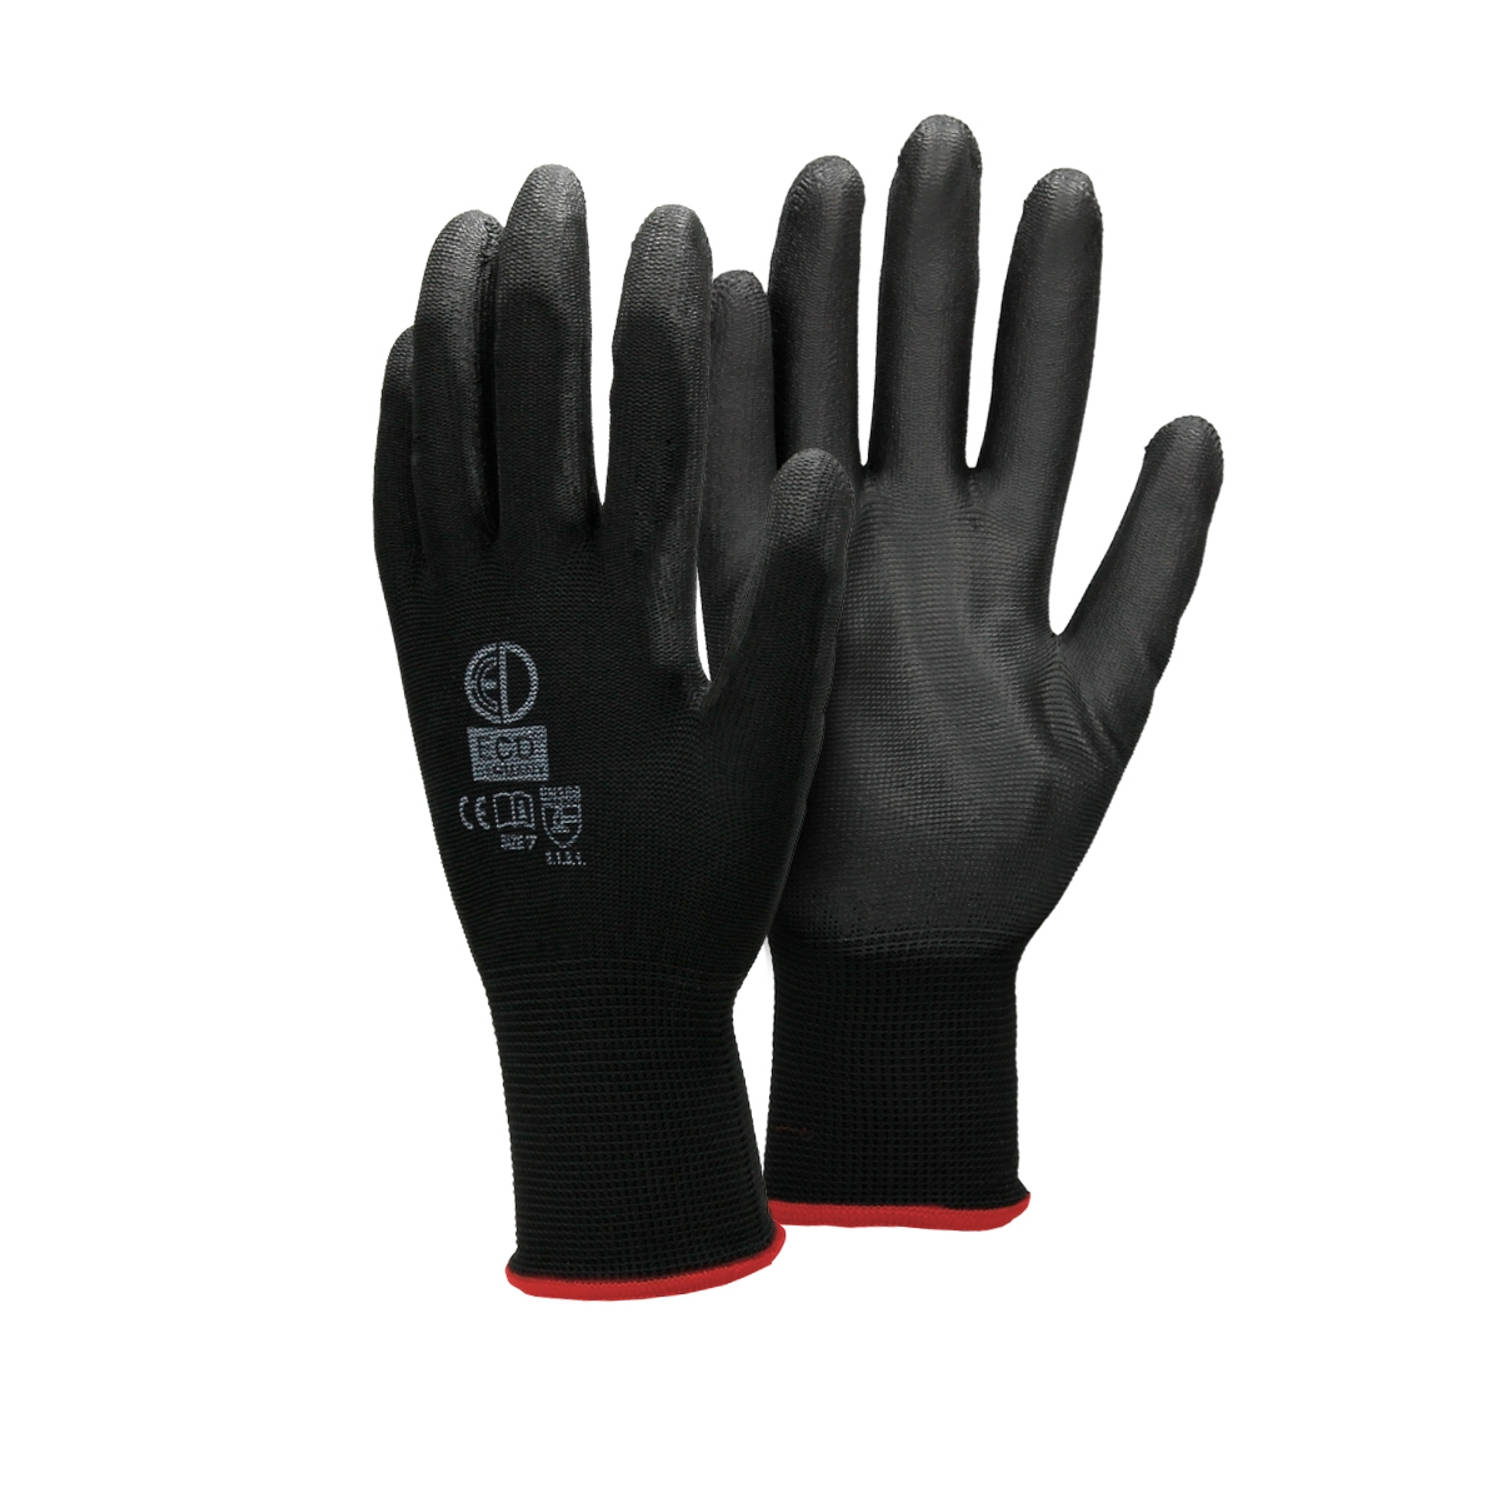 ECD Germany 24 paar werkhandschoenen met PU coating - maat 7-S - zwart - monteurshandschoenen montagehandschoenen beschermende handschoenen tuinhandschoenen - diverse kleuren & mat